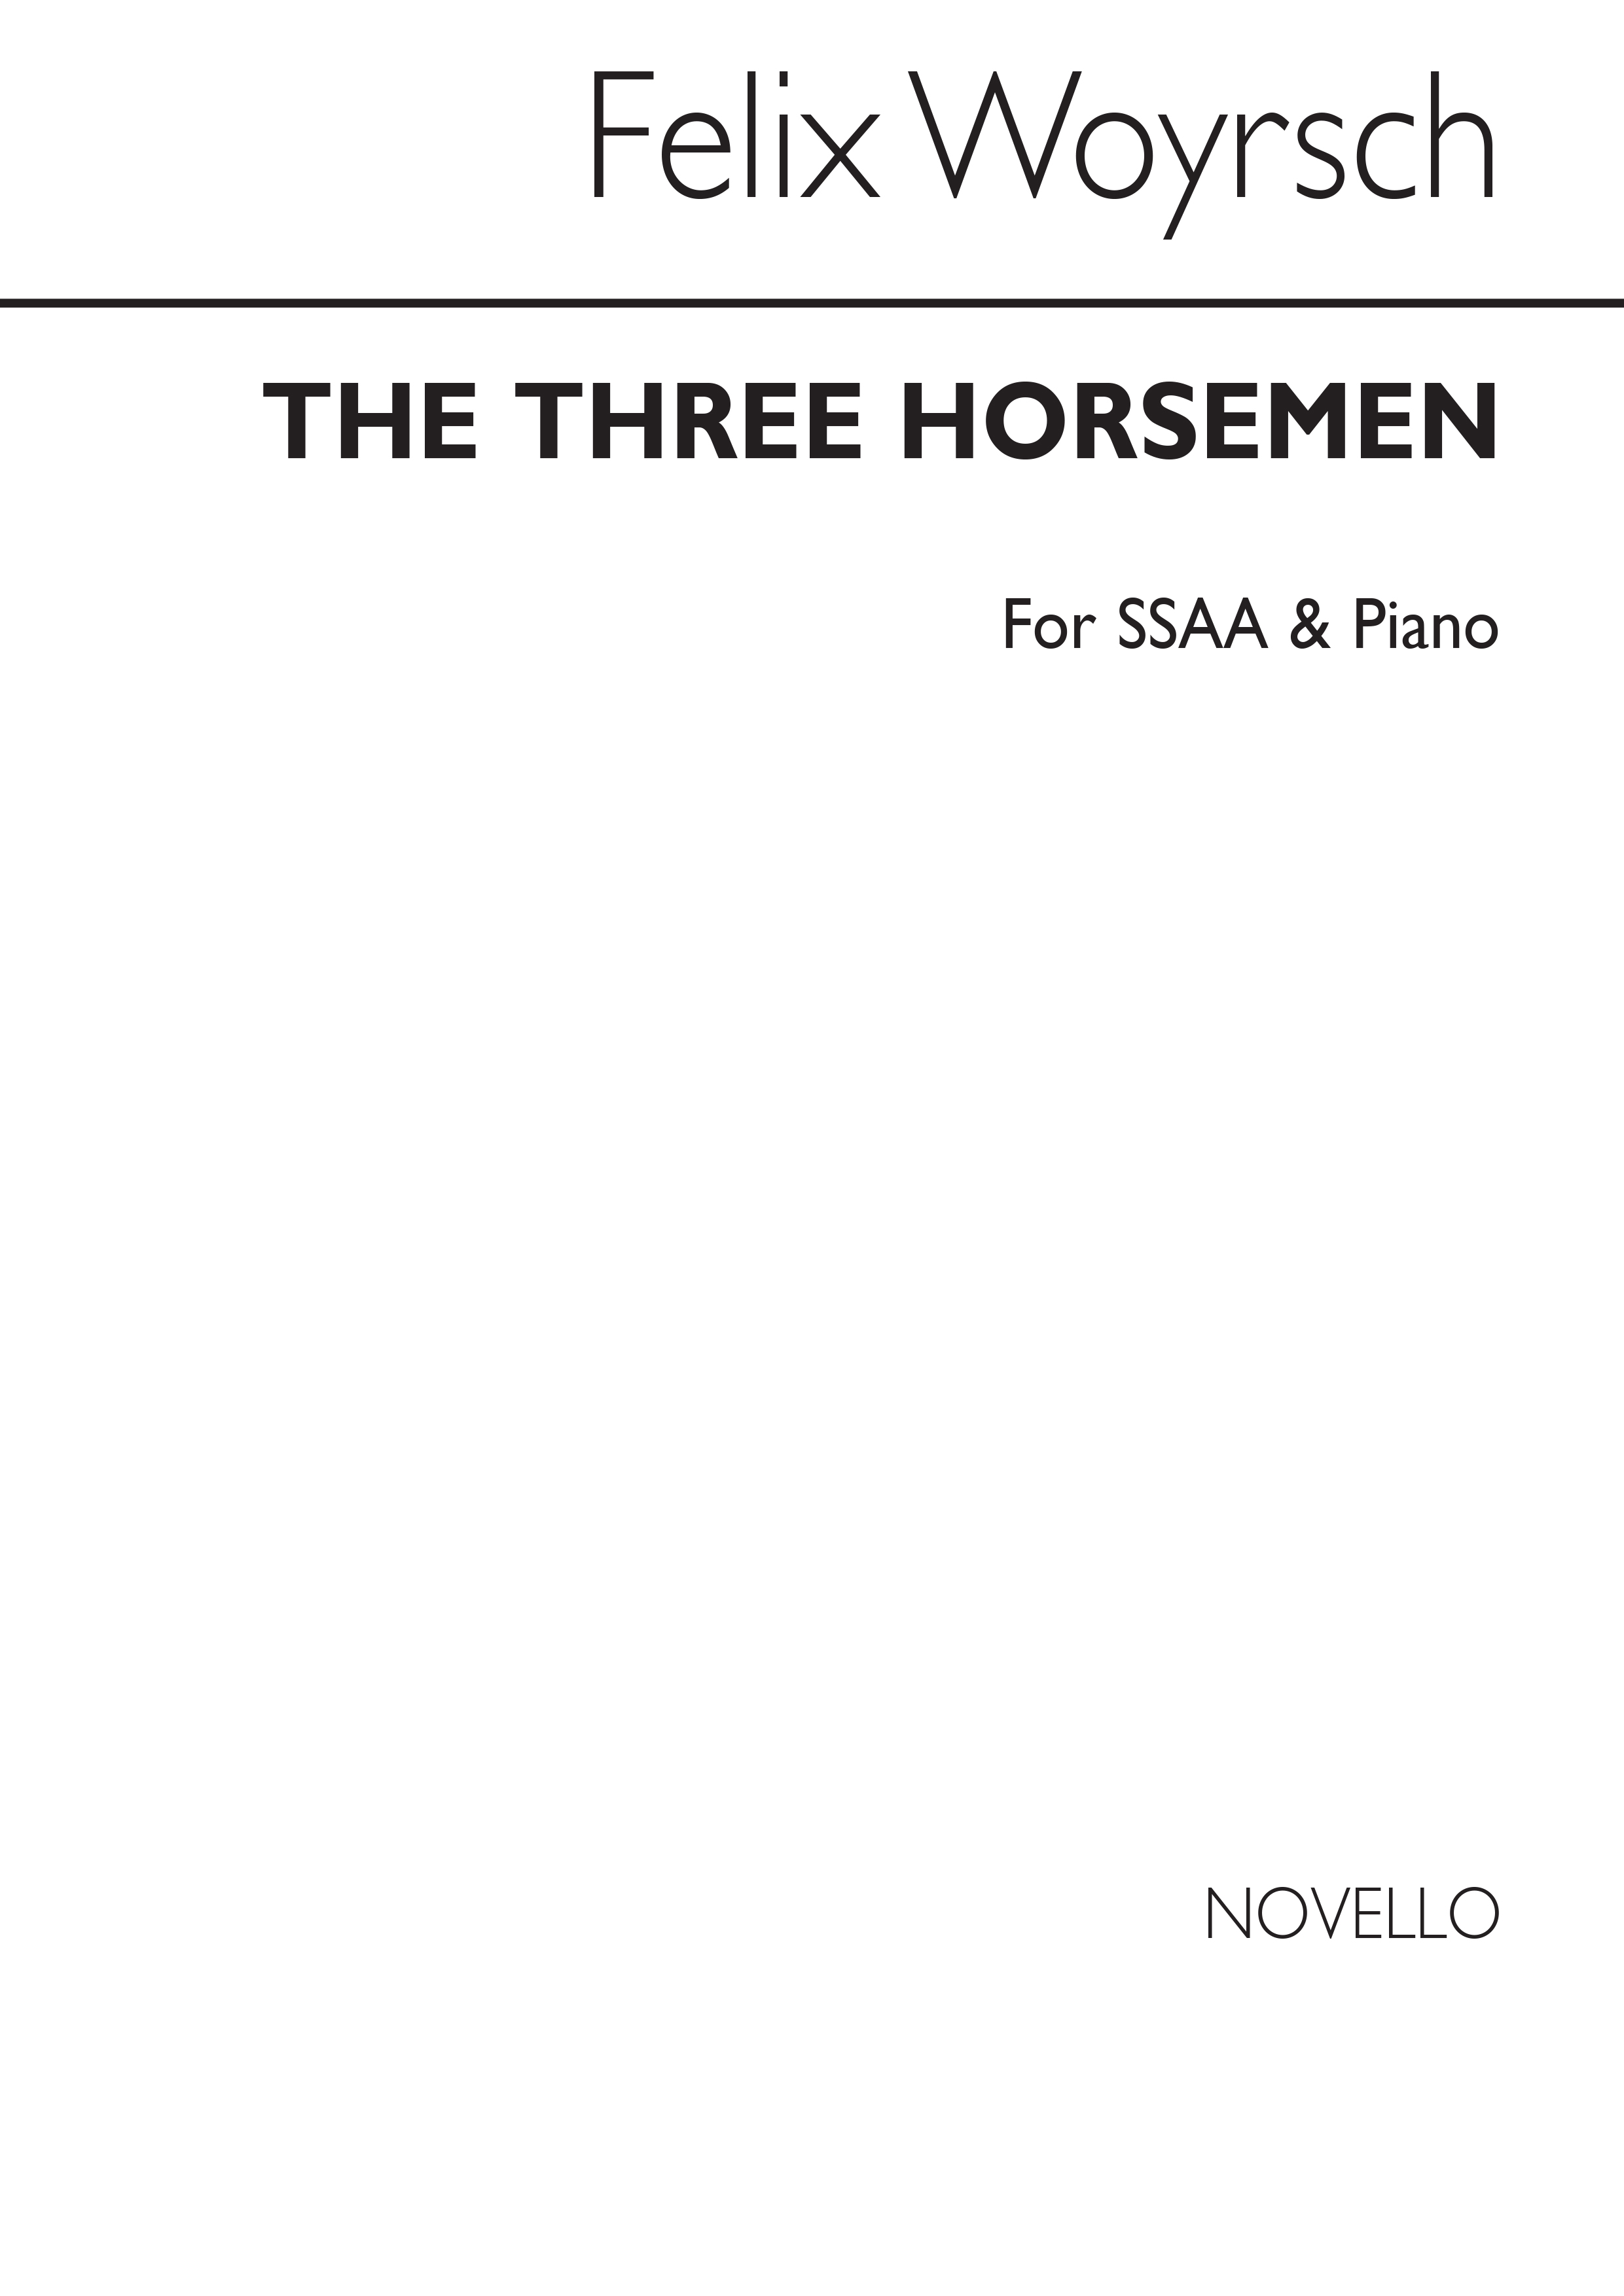 Woyrsch: The Three Horsemen